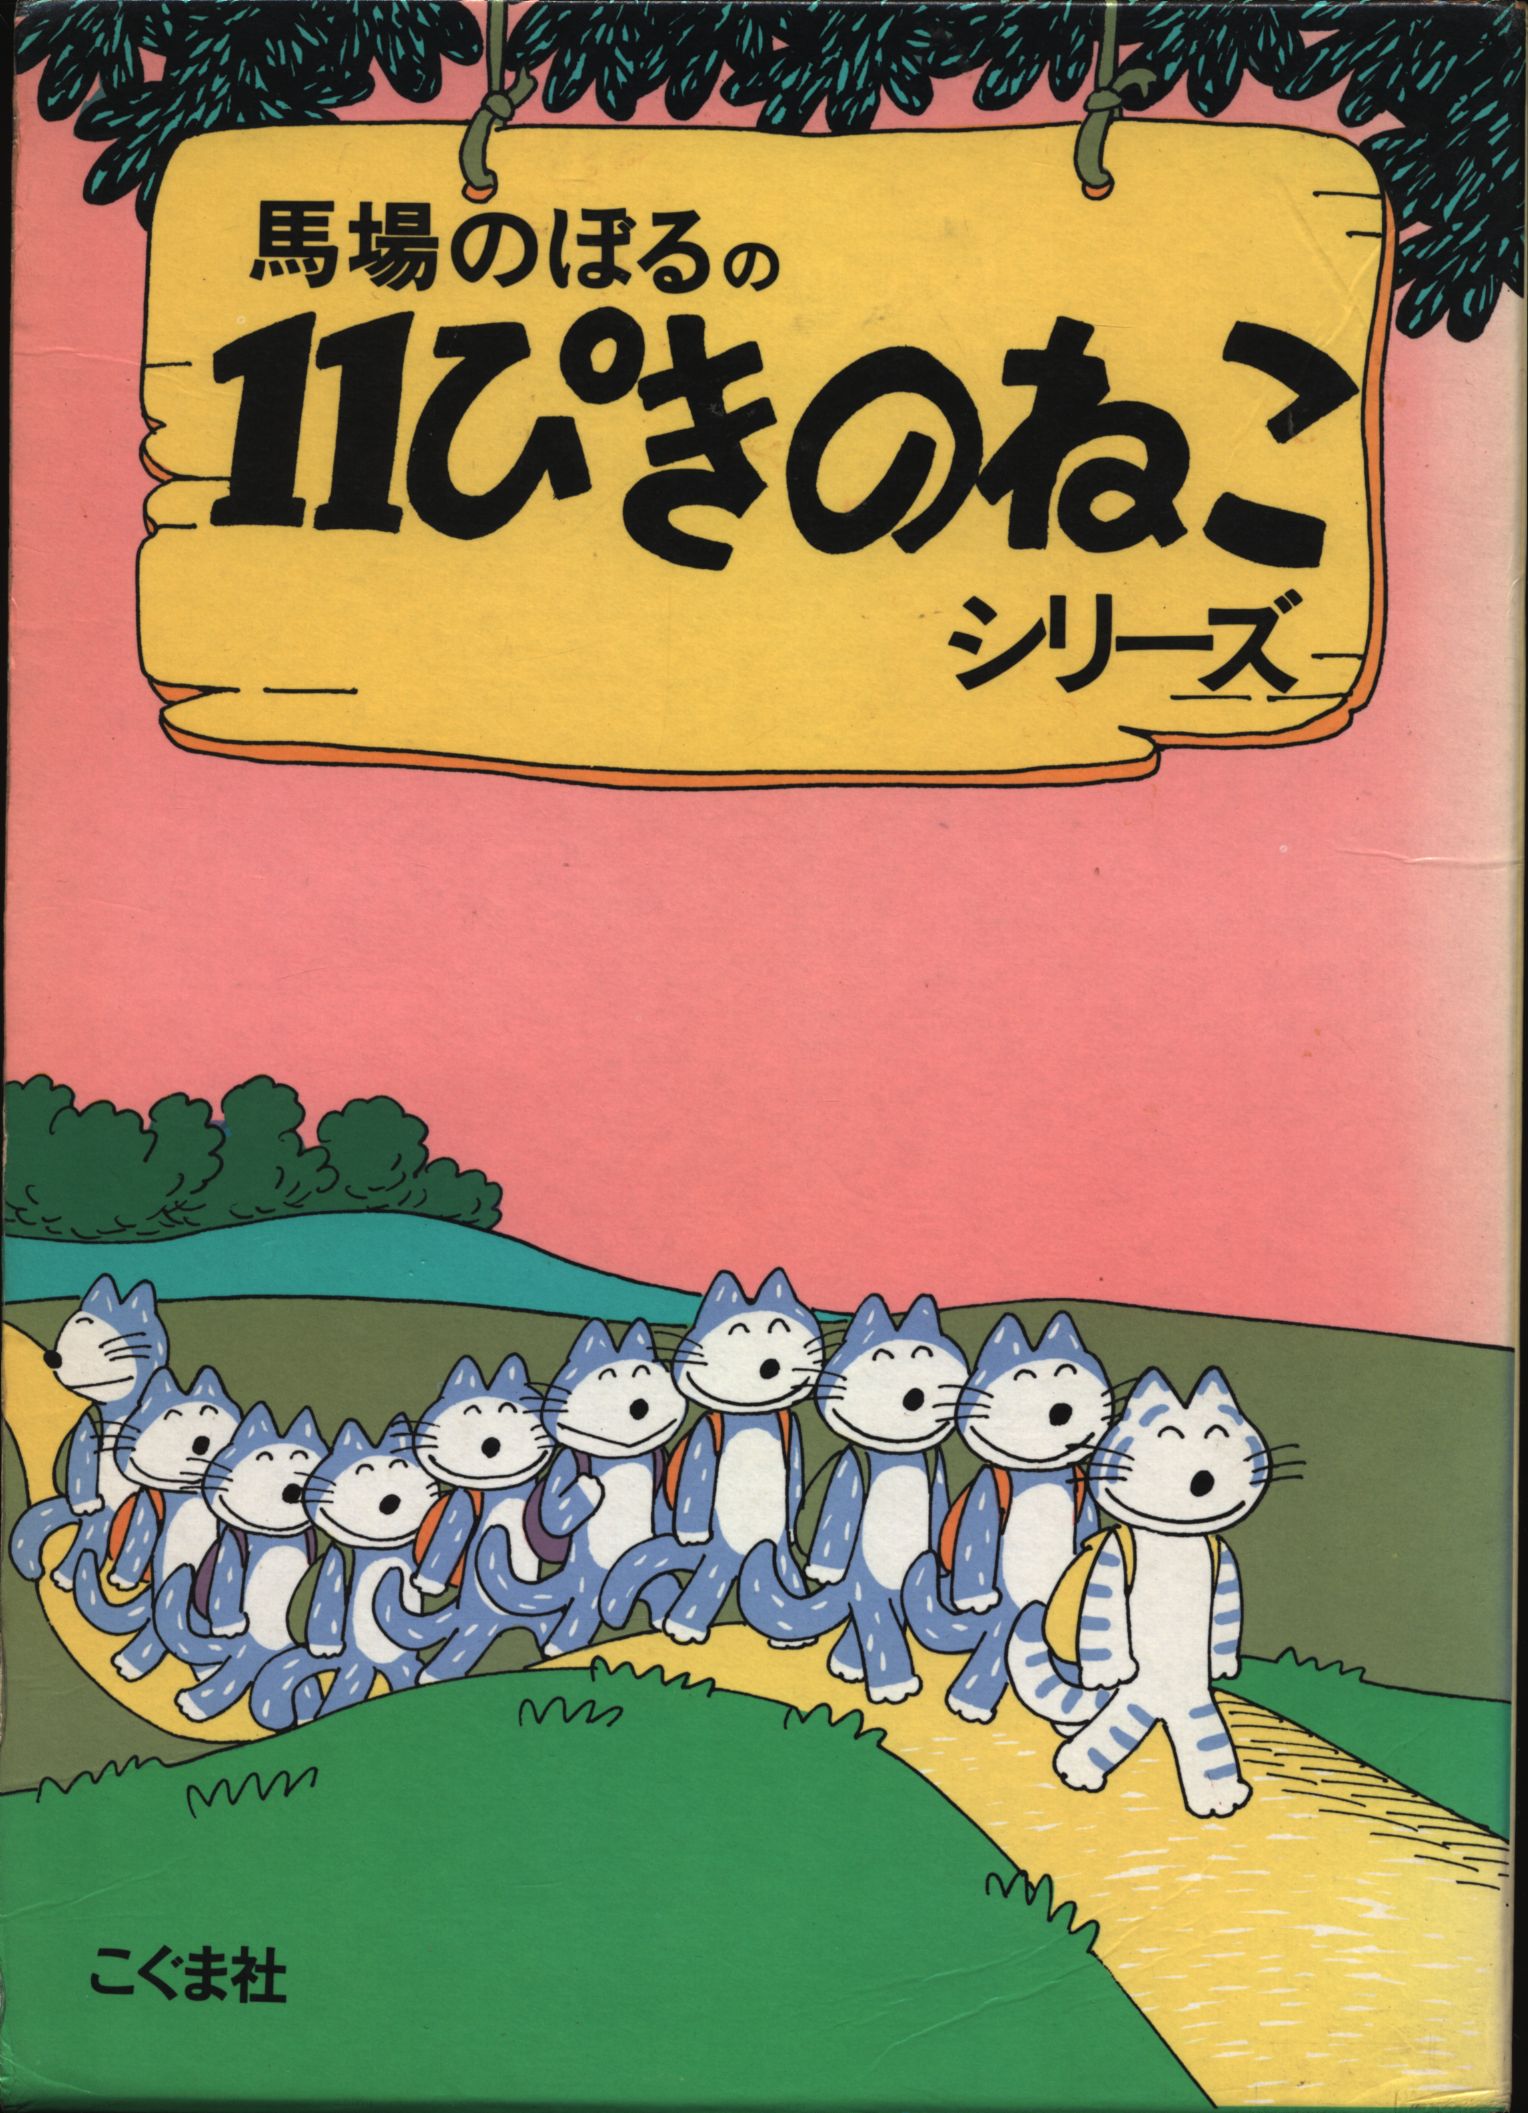 11ぴきのねこ 絵本 こぐま社 - 絵本・児童書